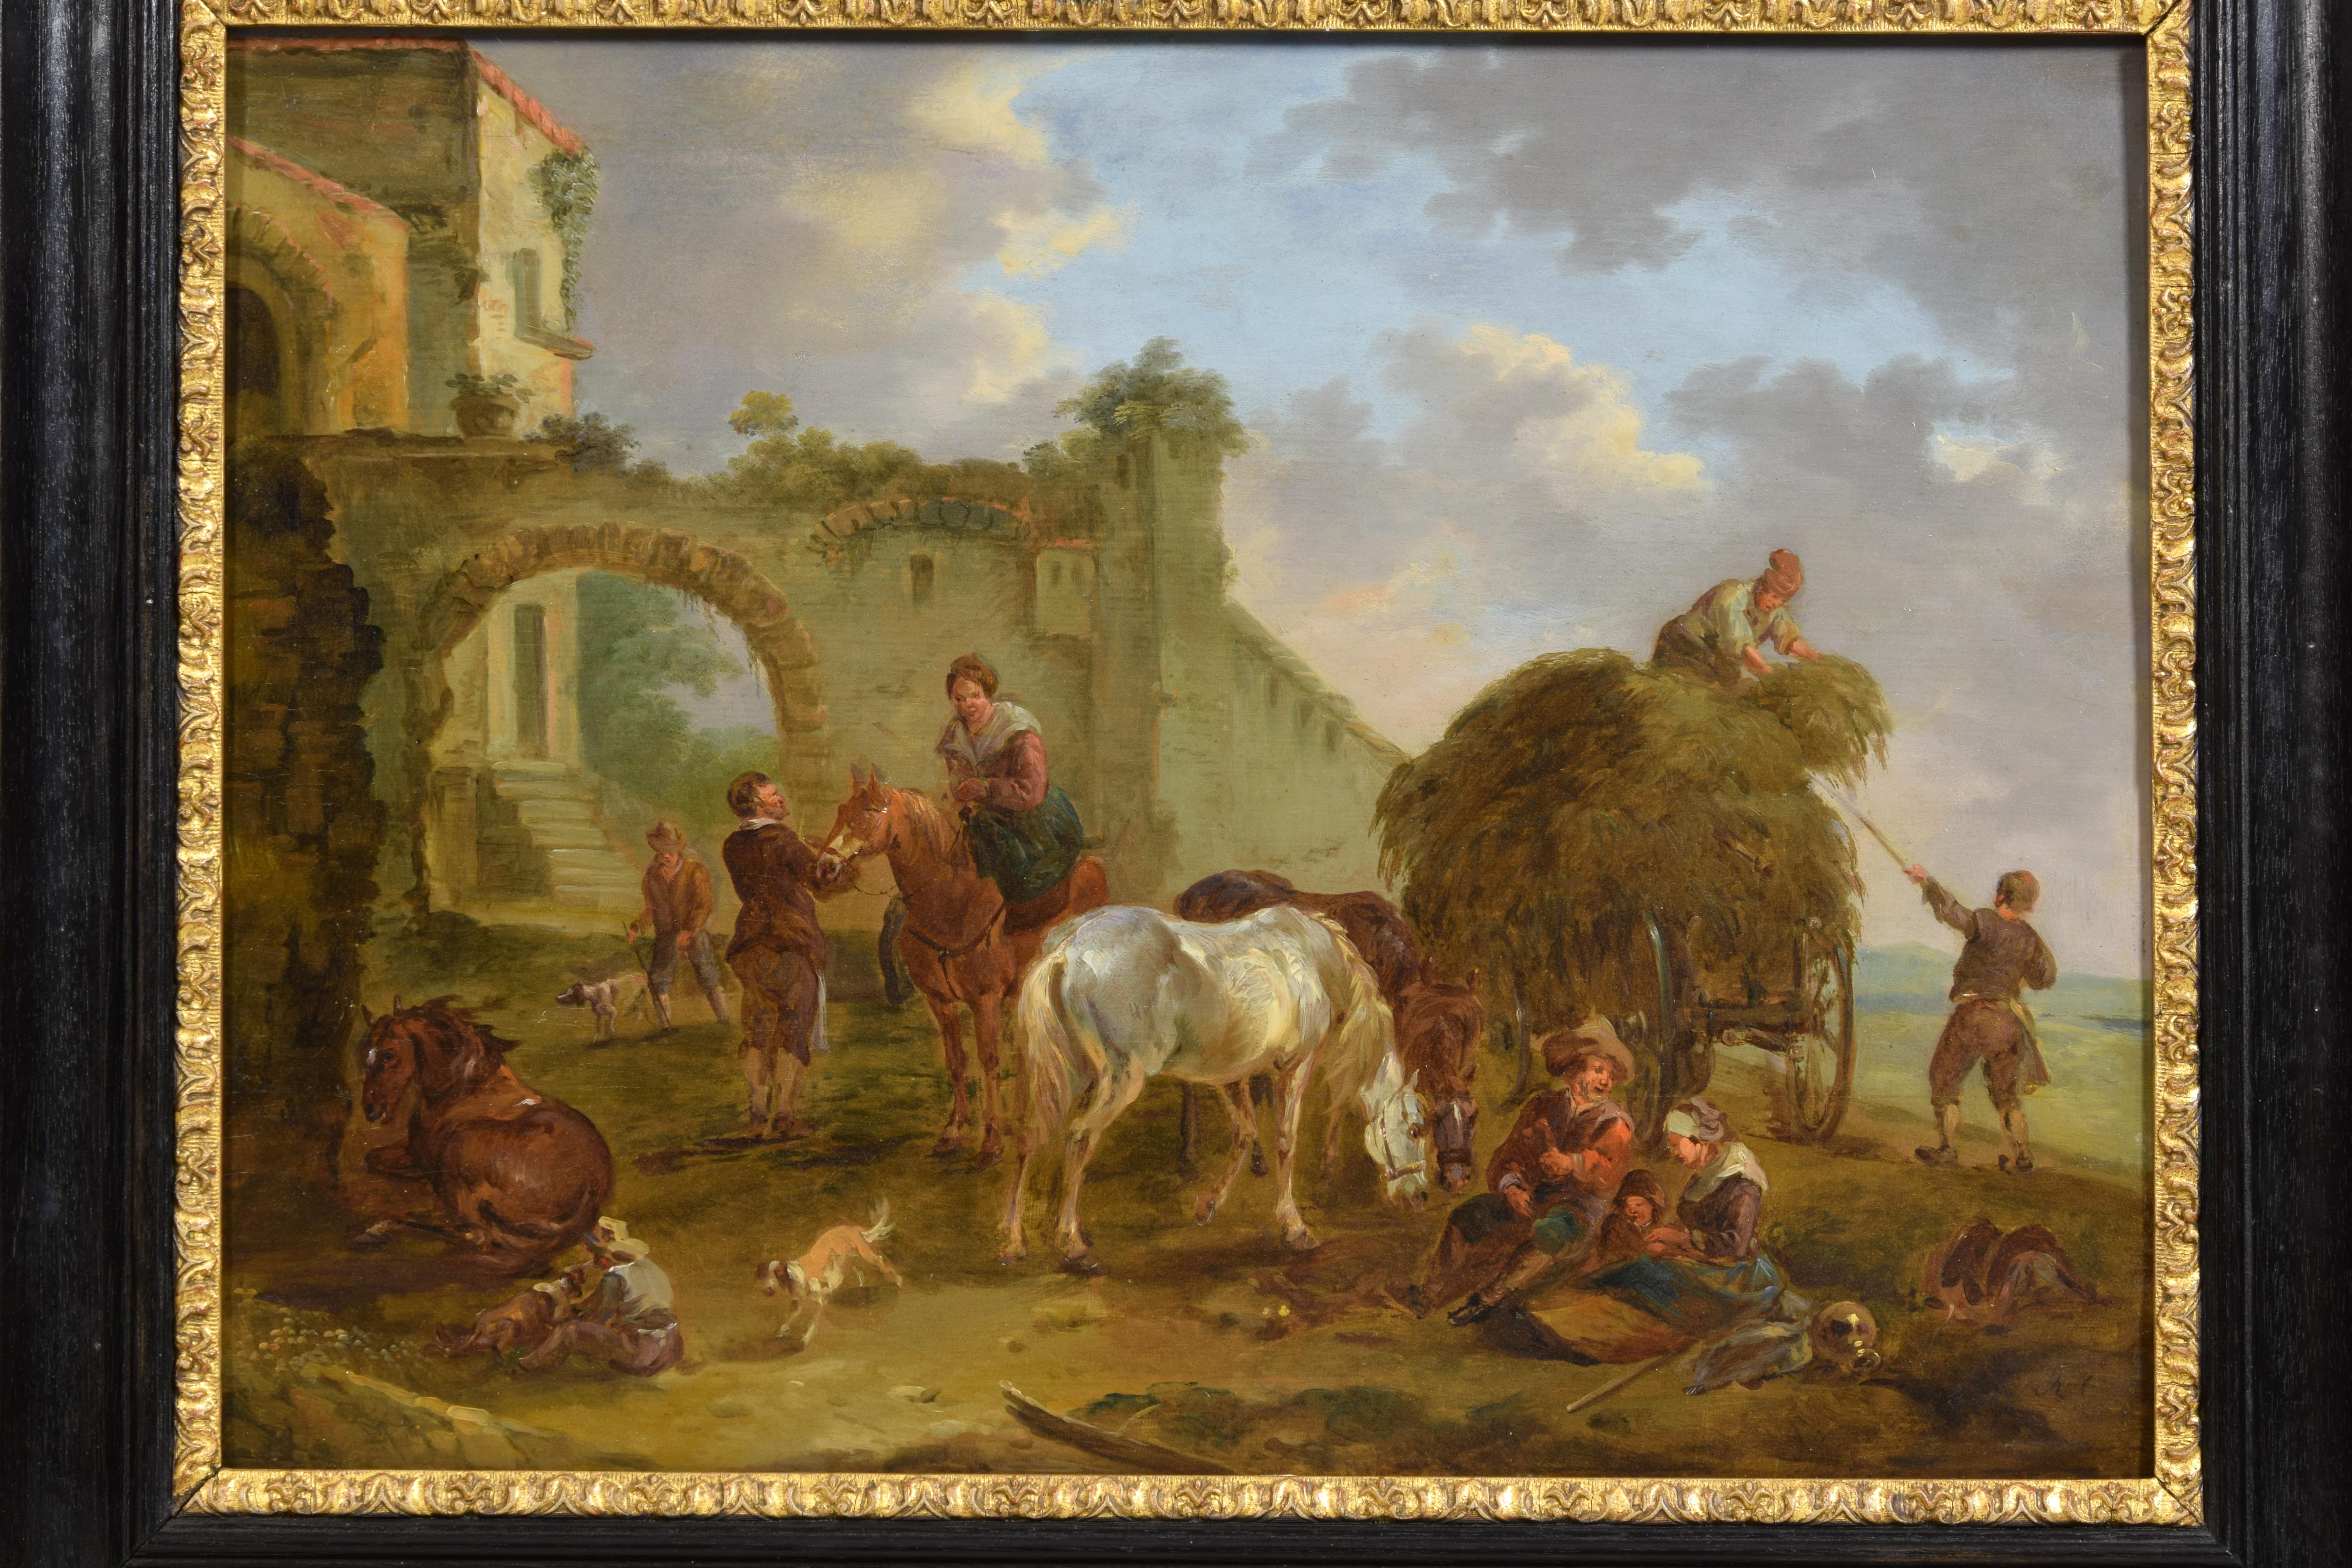 Jan Miel (suiveur de)
La scène bambocciante
Huile sur panneau, cm 38,5 x 51. Cadre  66 x 53,5 x 4,5 cm

La peinture lumineuse, d'un grand impact chromatique grâce à la technique de l'huile sur panneau, représente une scène bambocciante animée, dont